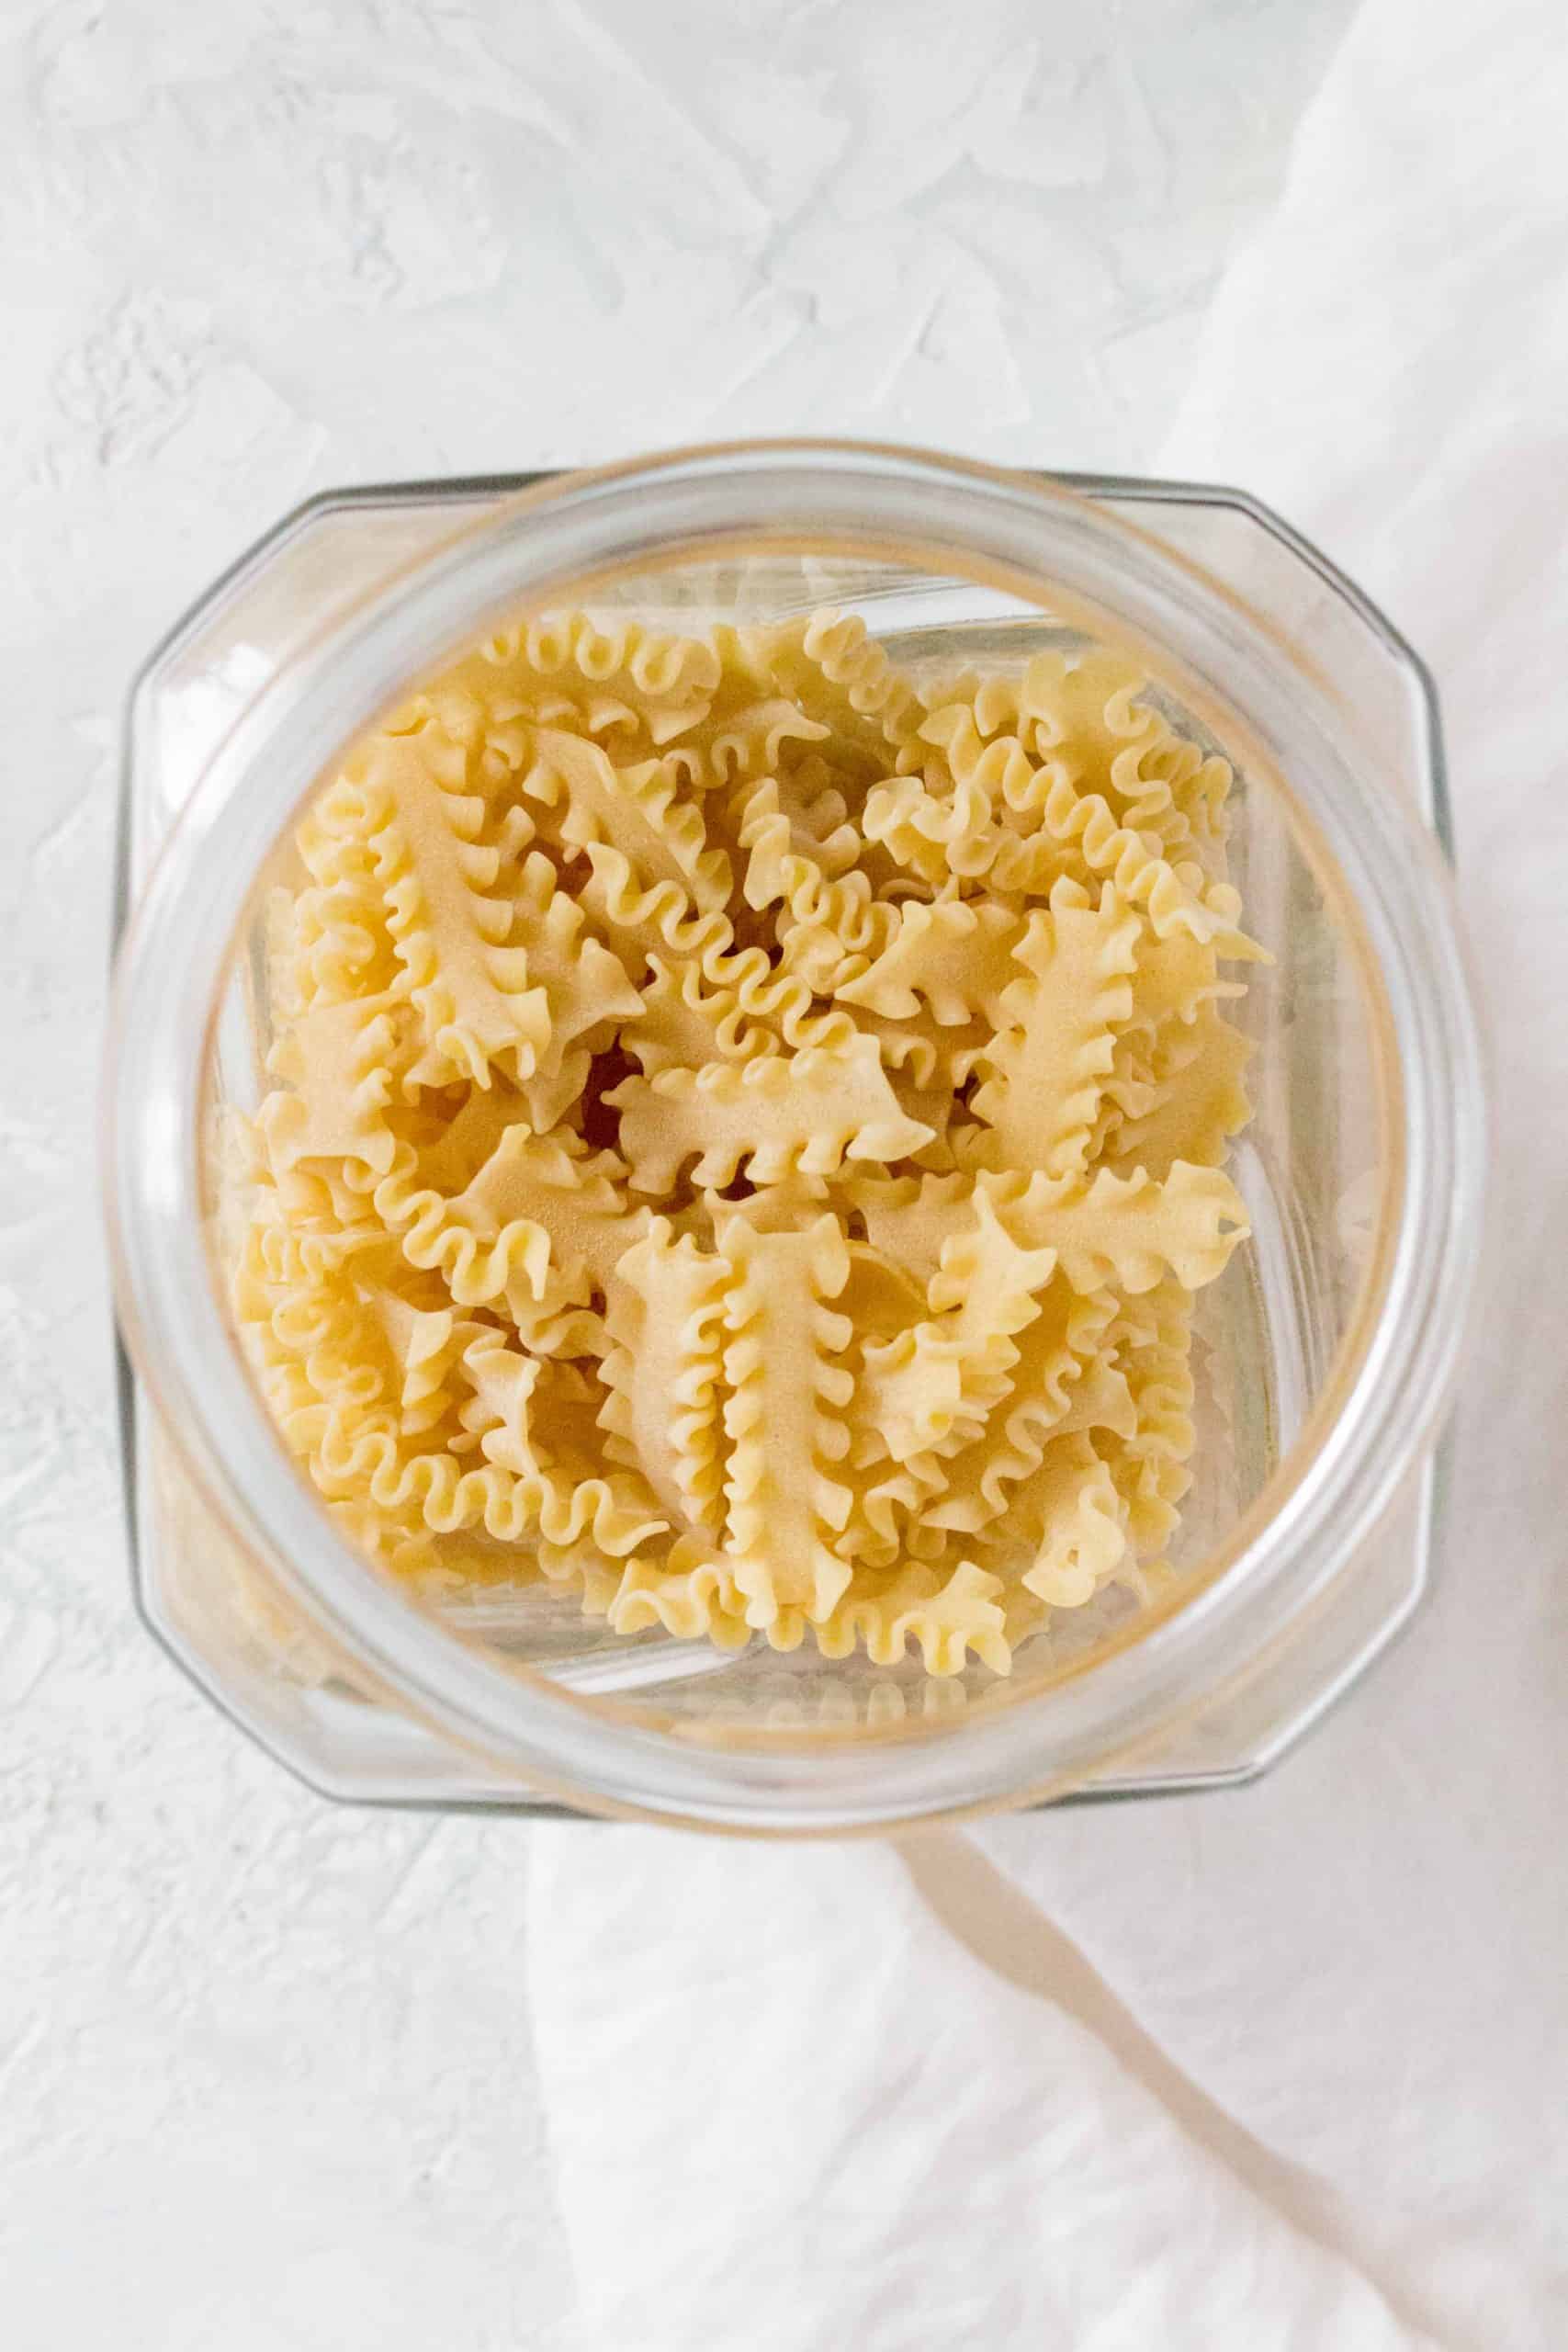 mafalda pasta in a container.